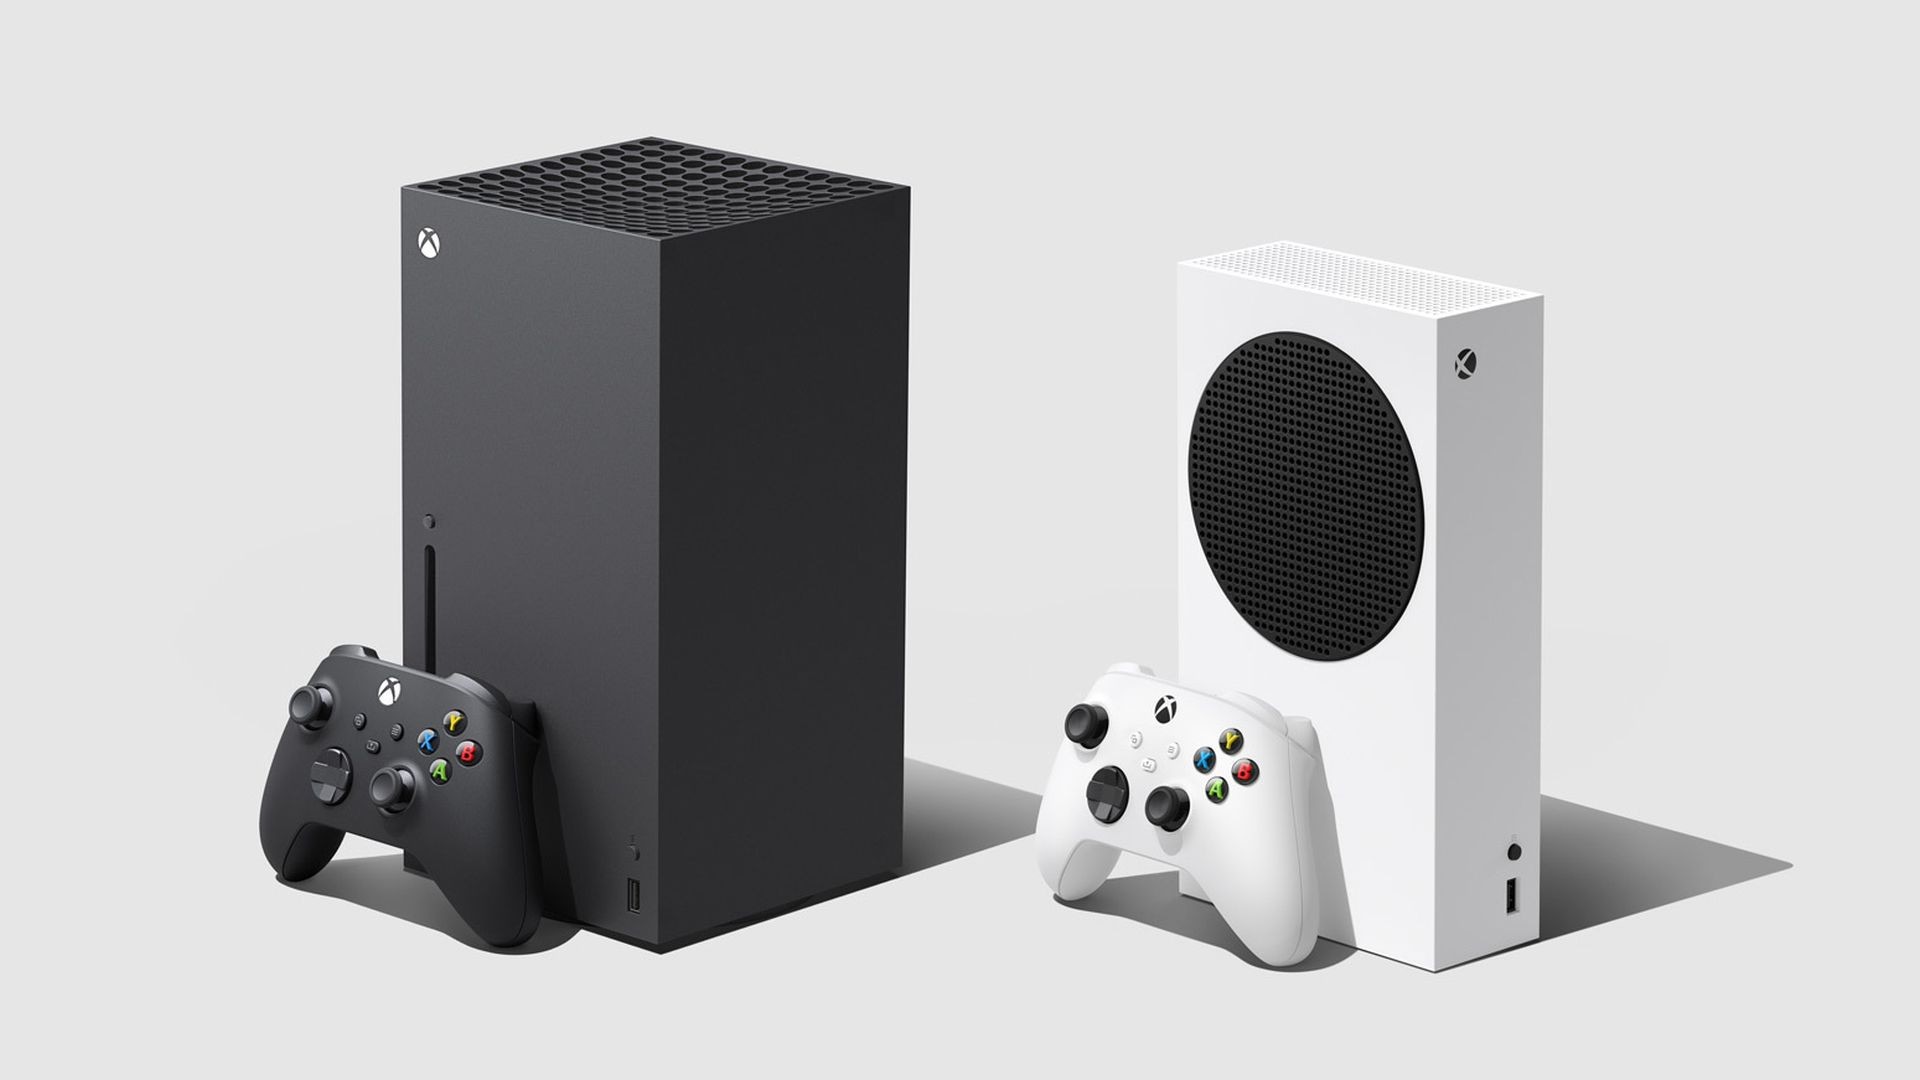 Le Xbox Game Pass ne convainc toujours pas assez pour vendre des consoles  Xbox | Xbox One - Xboxygen